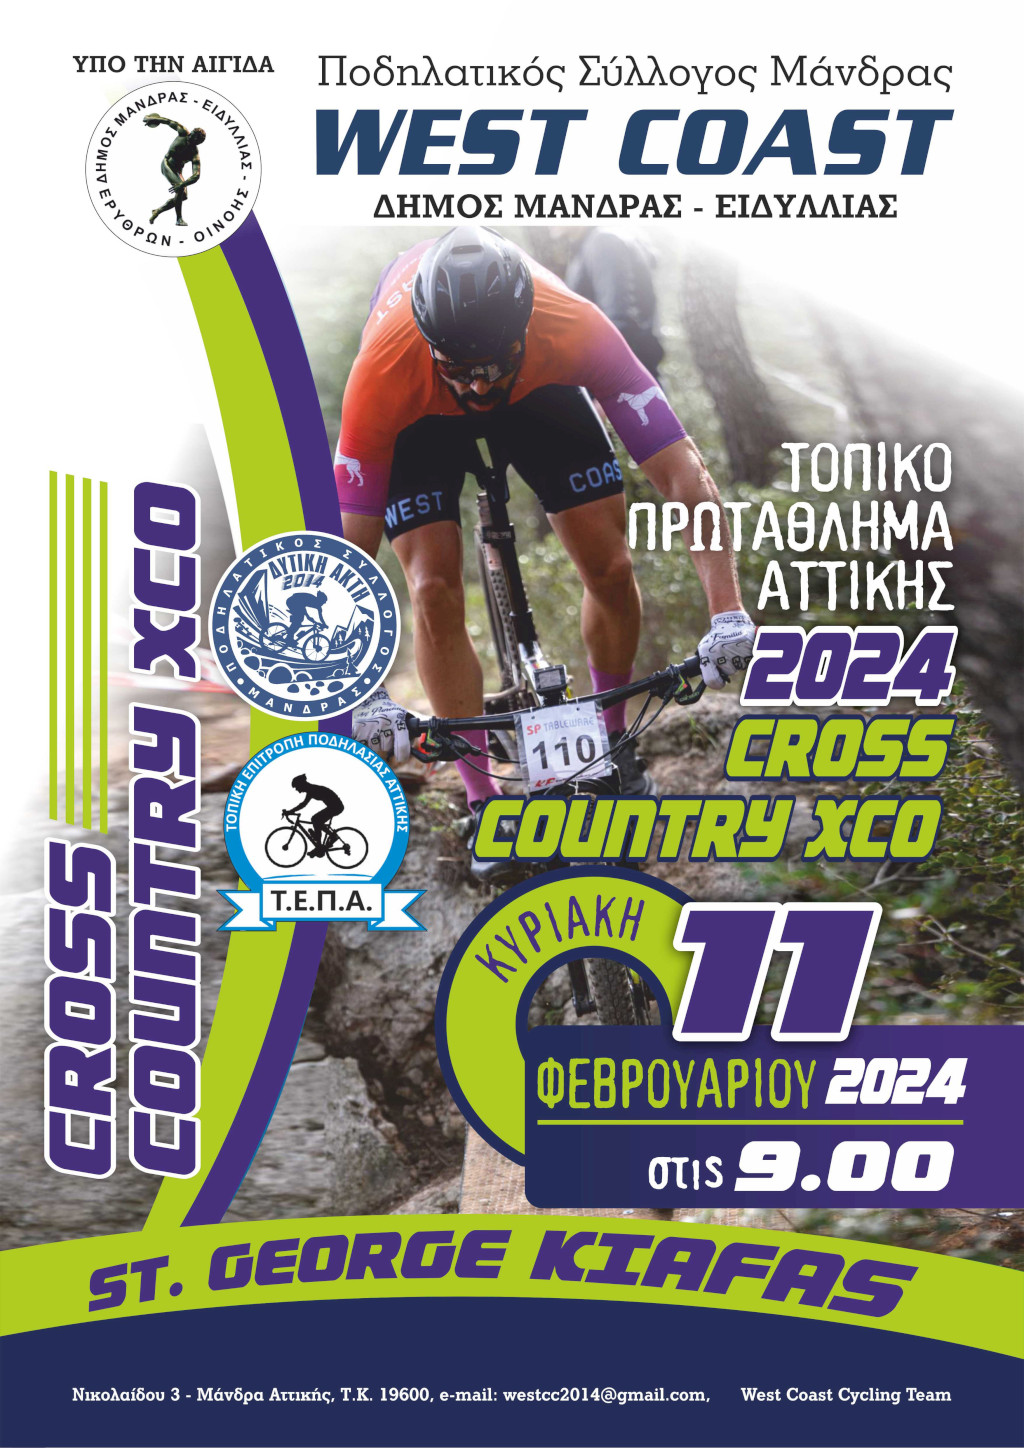 Δήμος Μάνδρας-Ειδυλλίας: Πρωτάθλημα Αττικής Ορεινής Ποδηλασίας 2024